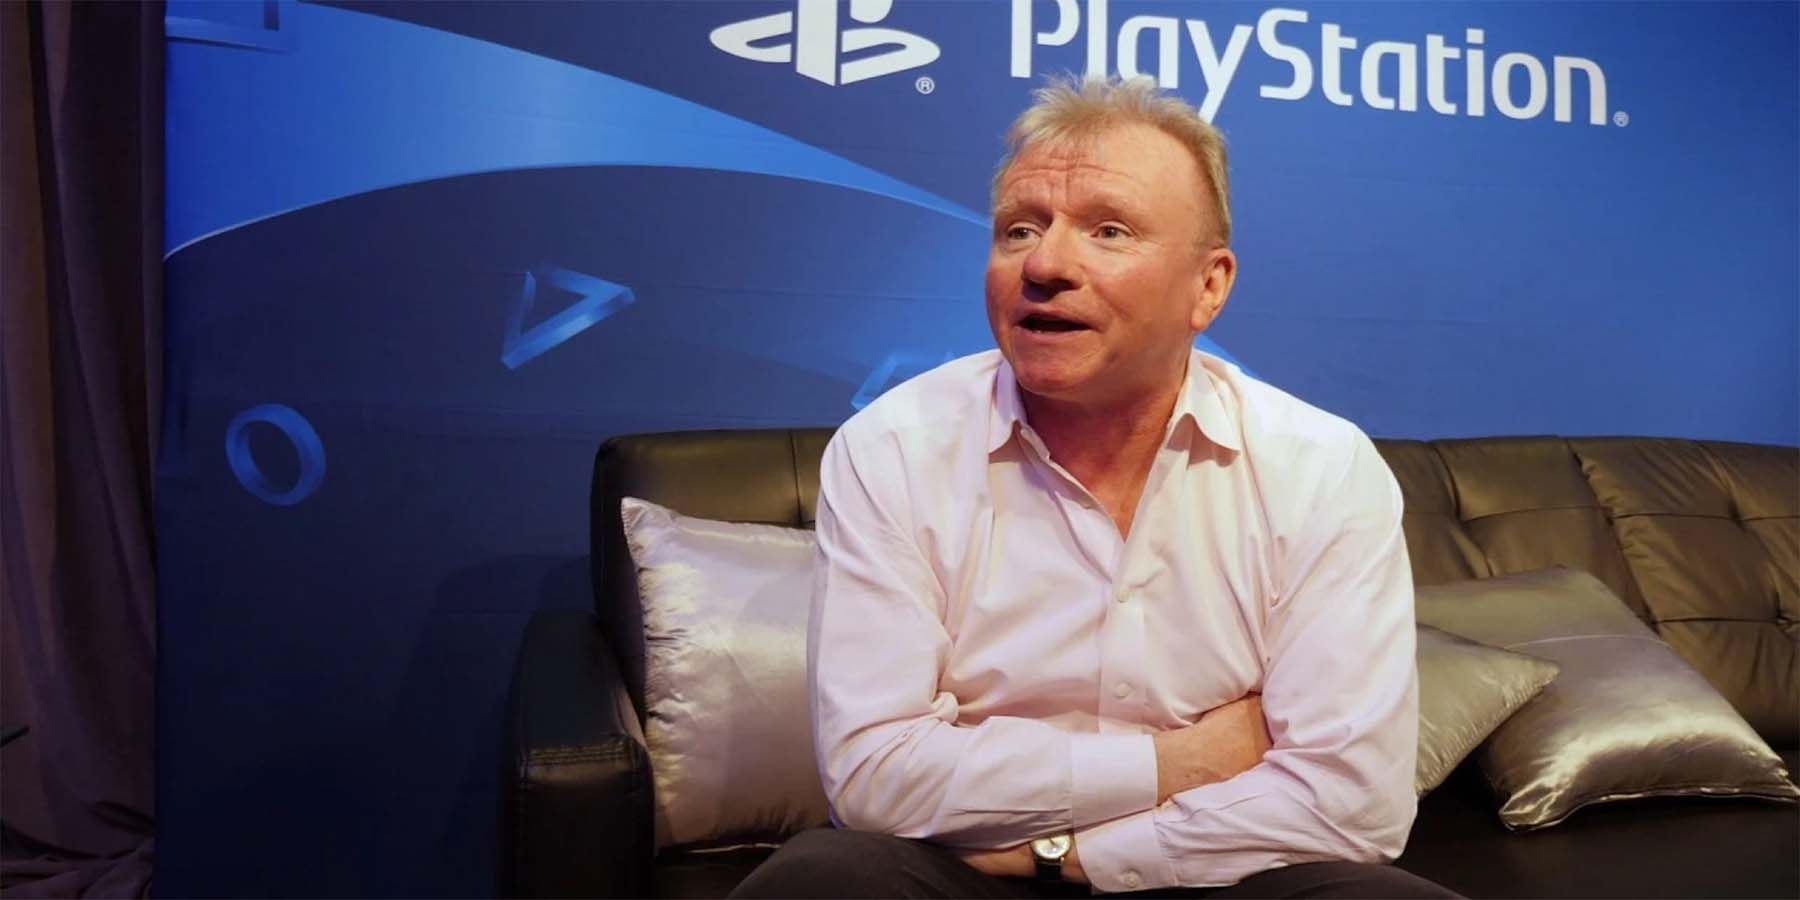 PlayStation’s Jim Ryan schlegte, um die Vergangenheit und Zukunft von Gaming in Fireside-Chat zu diskutieren